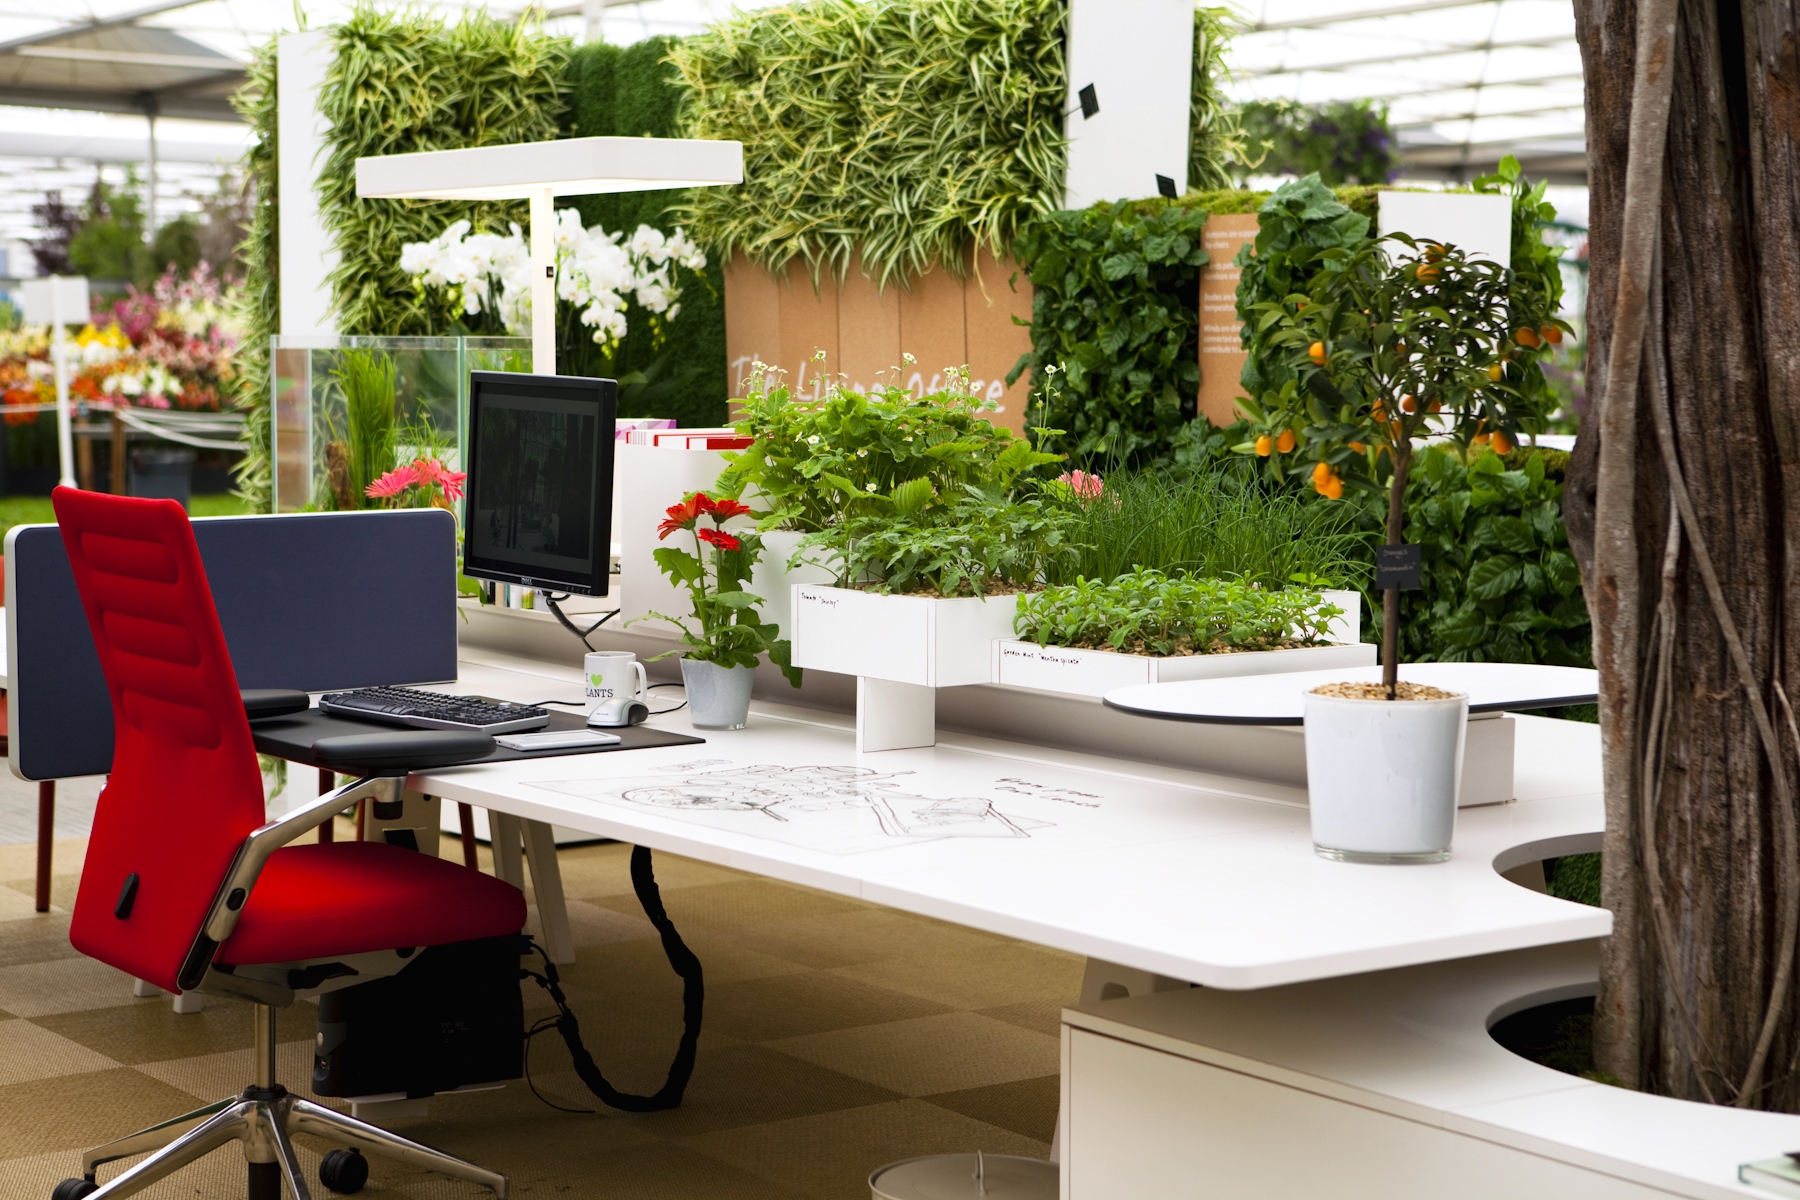 Vipoffice giúp thiết kế cây xanh trong văn phòng hoàn thiện nhất